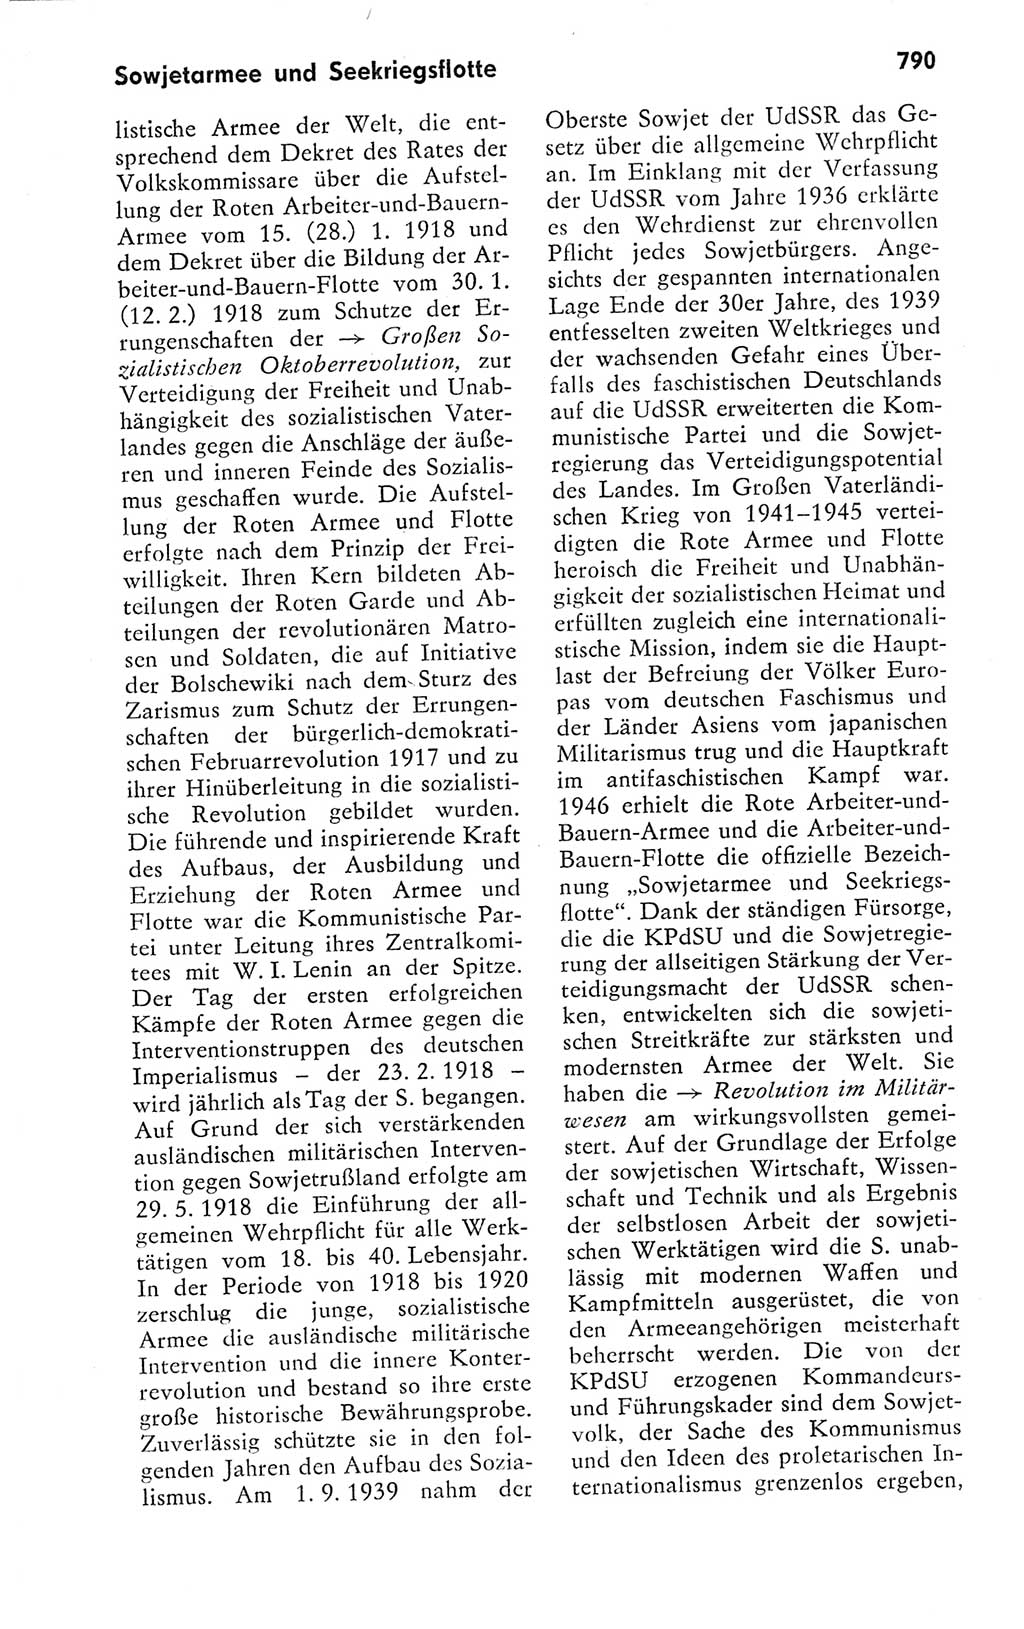 Kleines politisches Wörterbuch [Deutsche Demokratische Republik (DDR)] 1978, Seite 790 (Kl. pol. Wb. DDR 1978, S. 790)